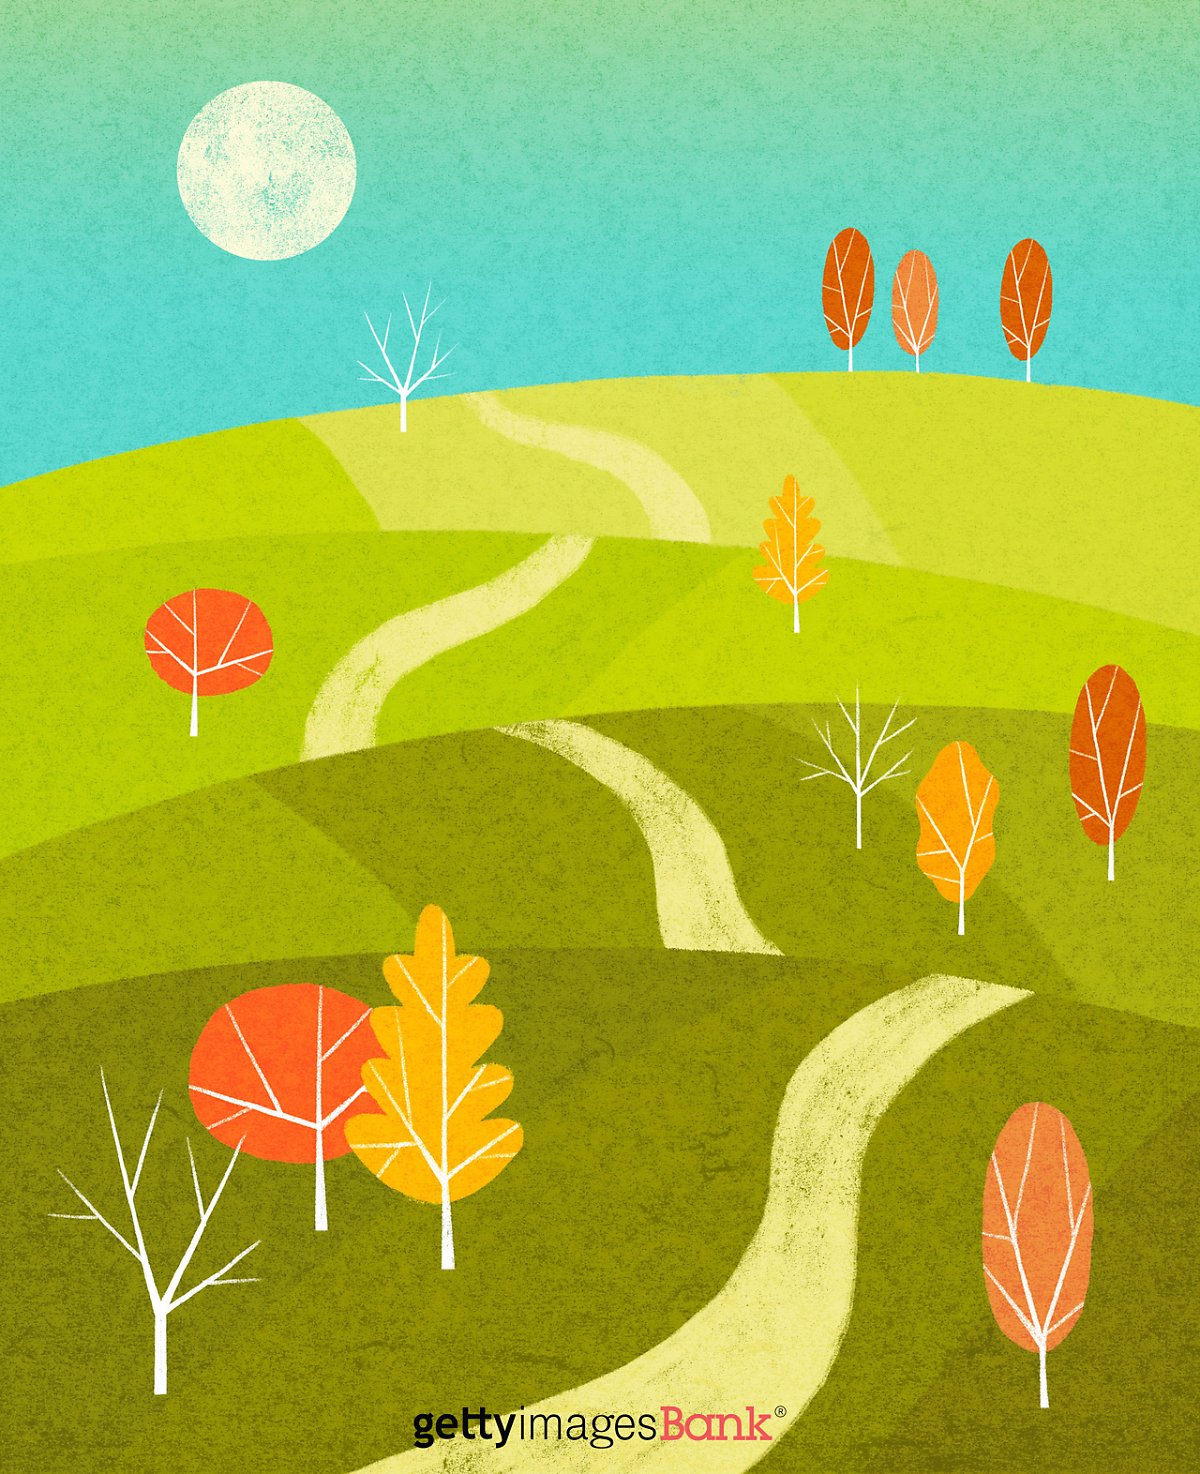 감성 돋는 손그림 스타일의 가을 일러스트, 가을 배경화면 모음 : 네이버 포스트